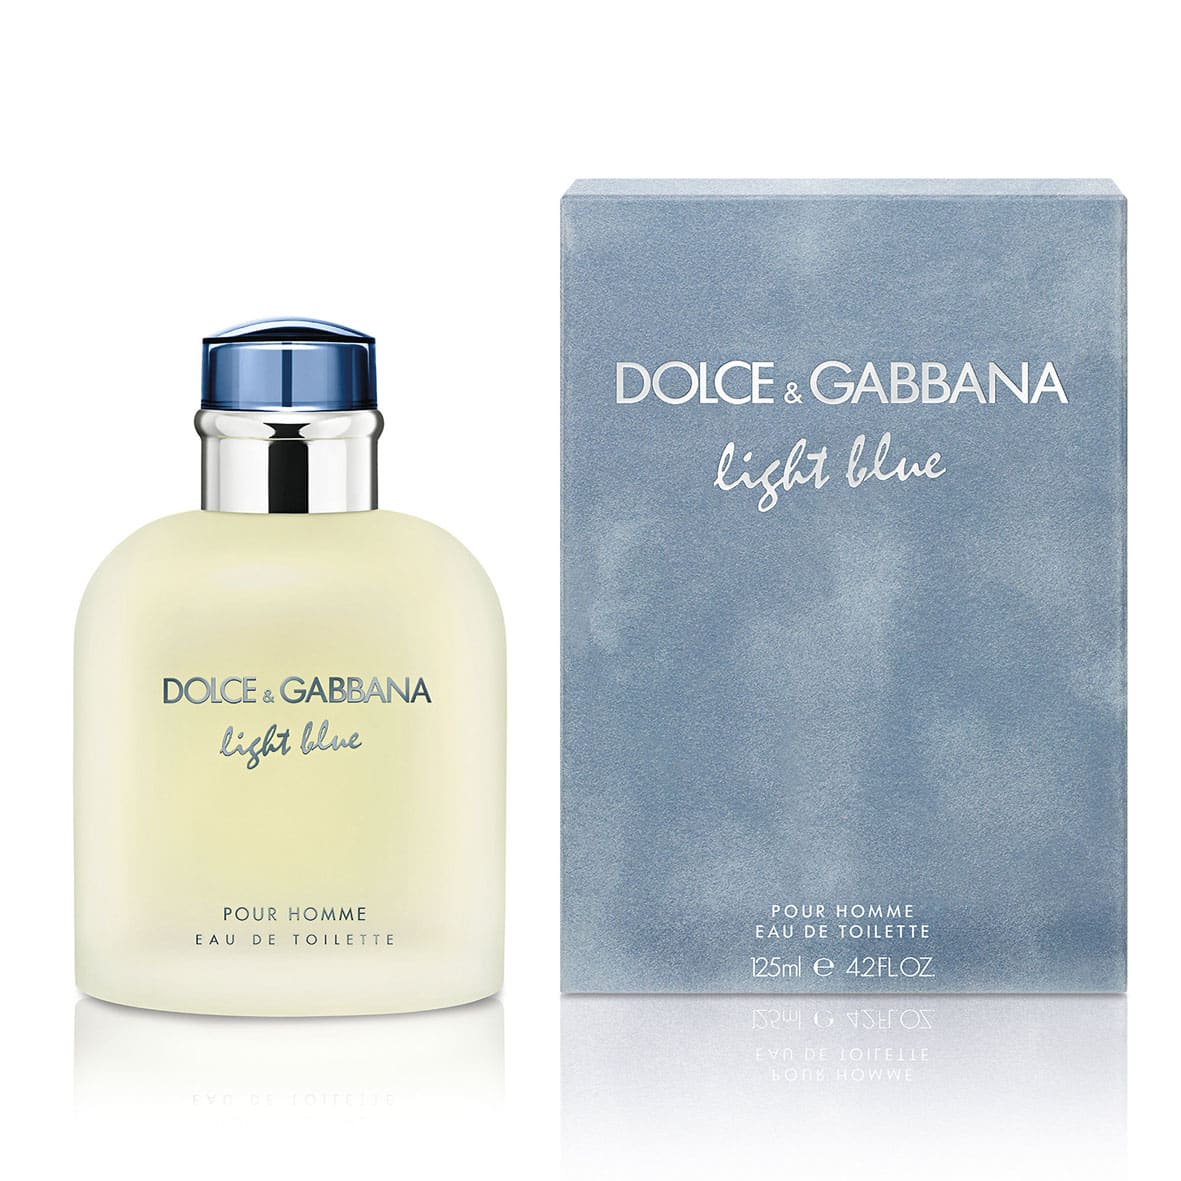 DOLCE & GABBANA LIGHT BLUE 200ML MEN – Recovasa